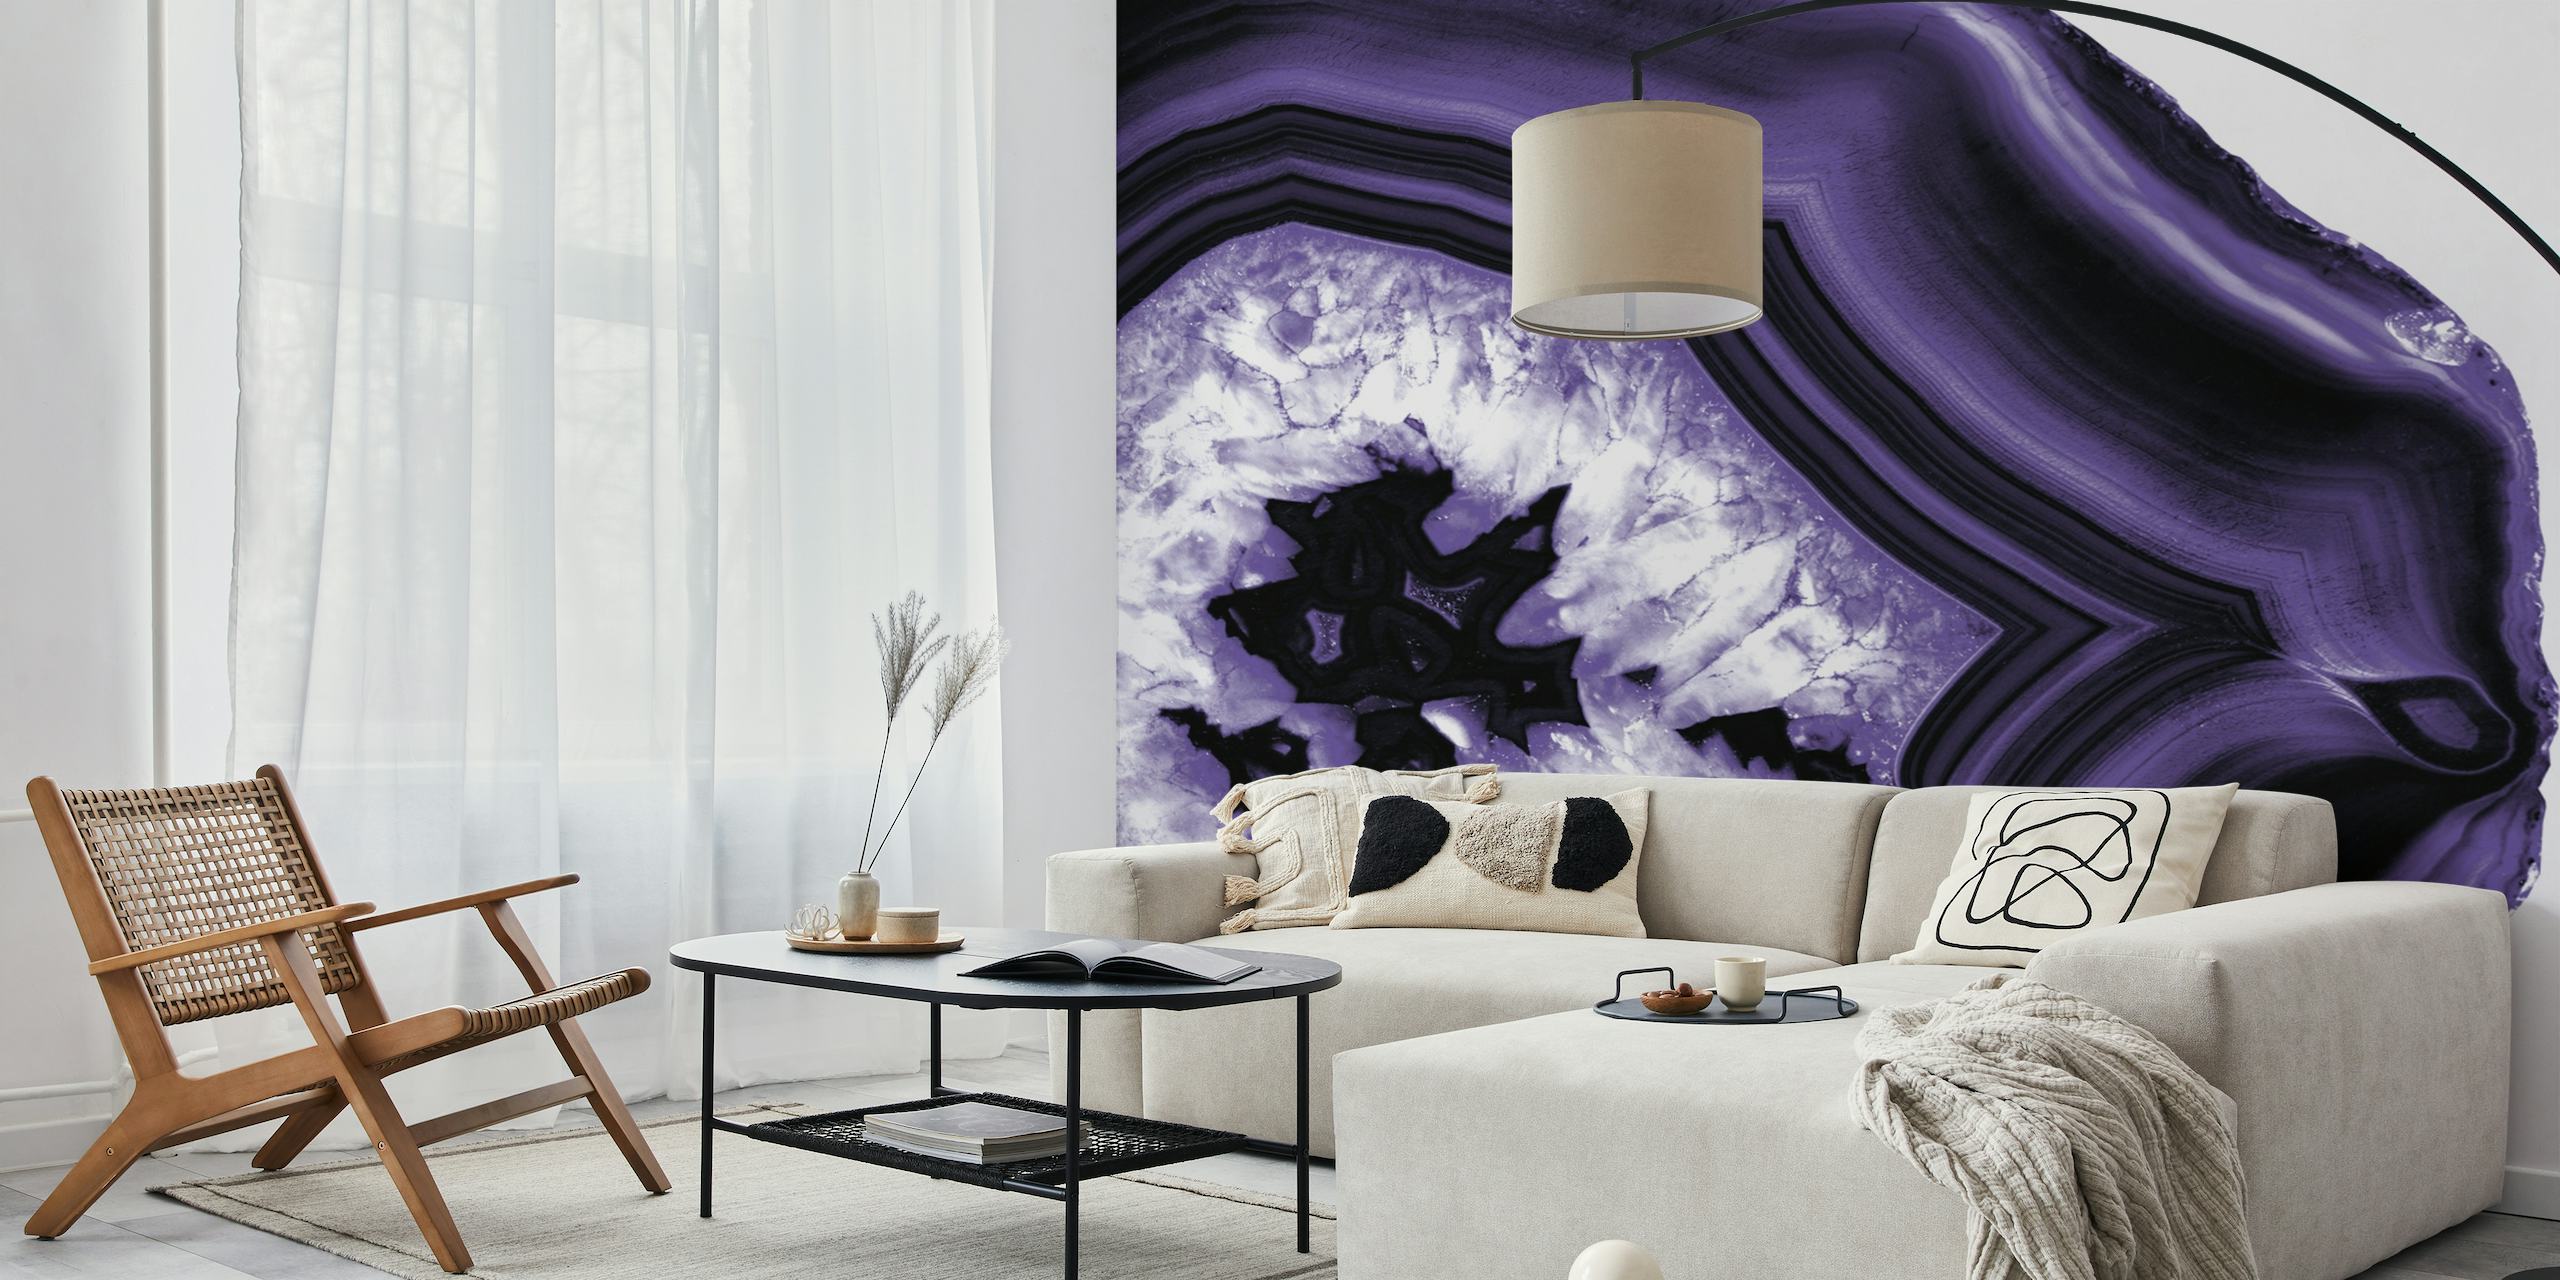 Pródigo mural de parede inspirado em ágata violeta com padrões de geodos sonhadores para decoração de interiores